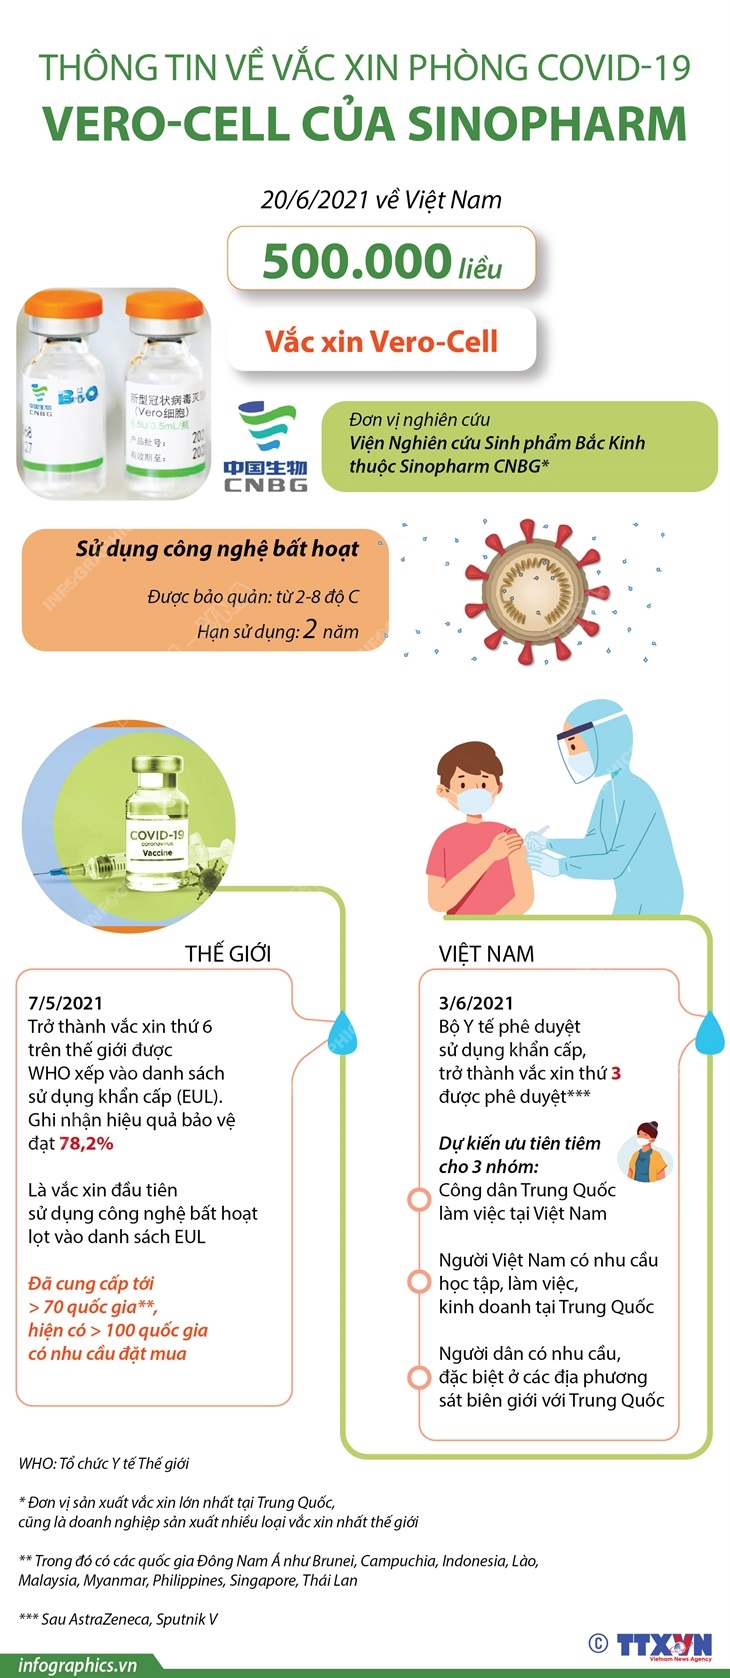 Thông tin về vắc xin phòng COVID-19 Vero-Cell của Sinopharm